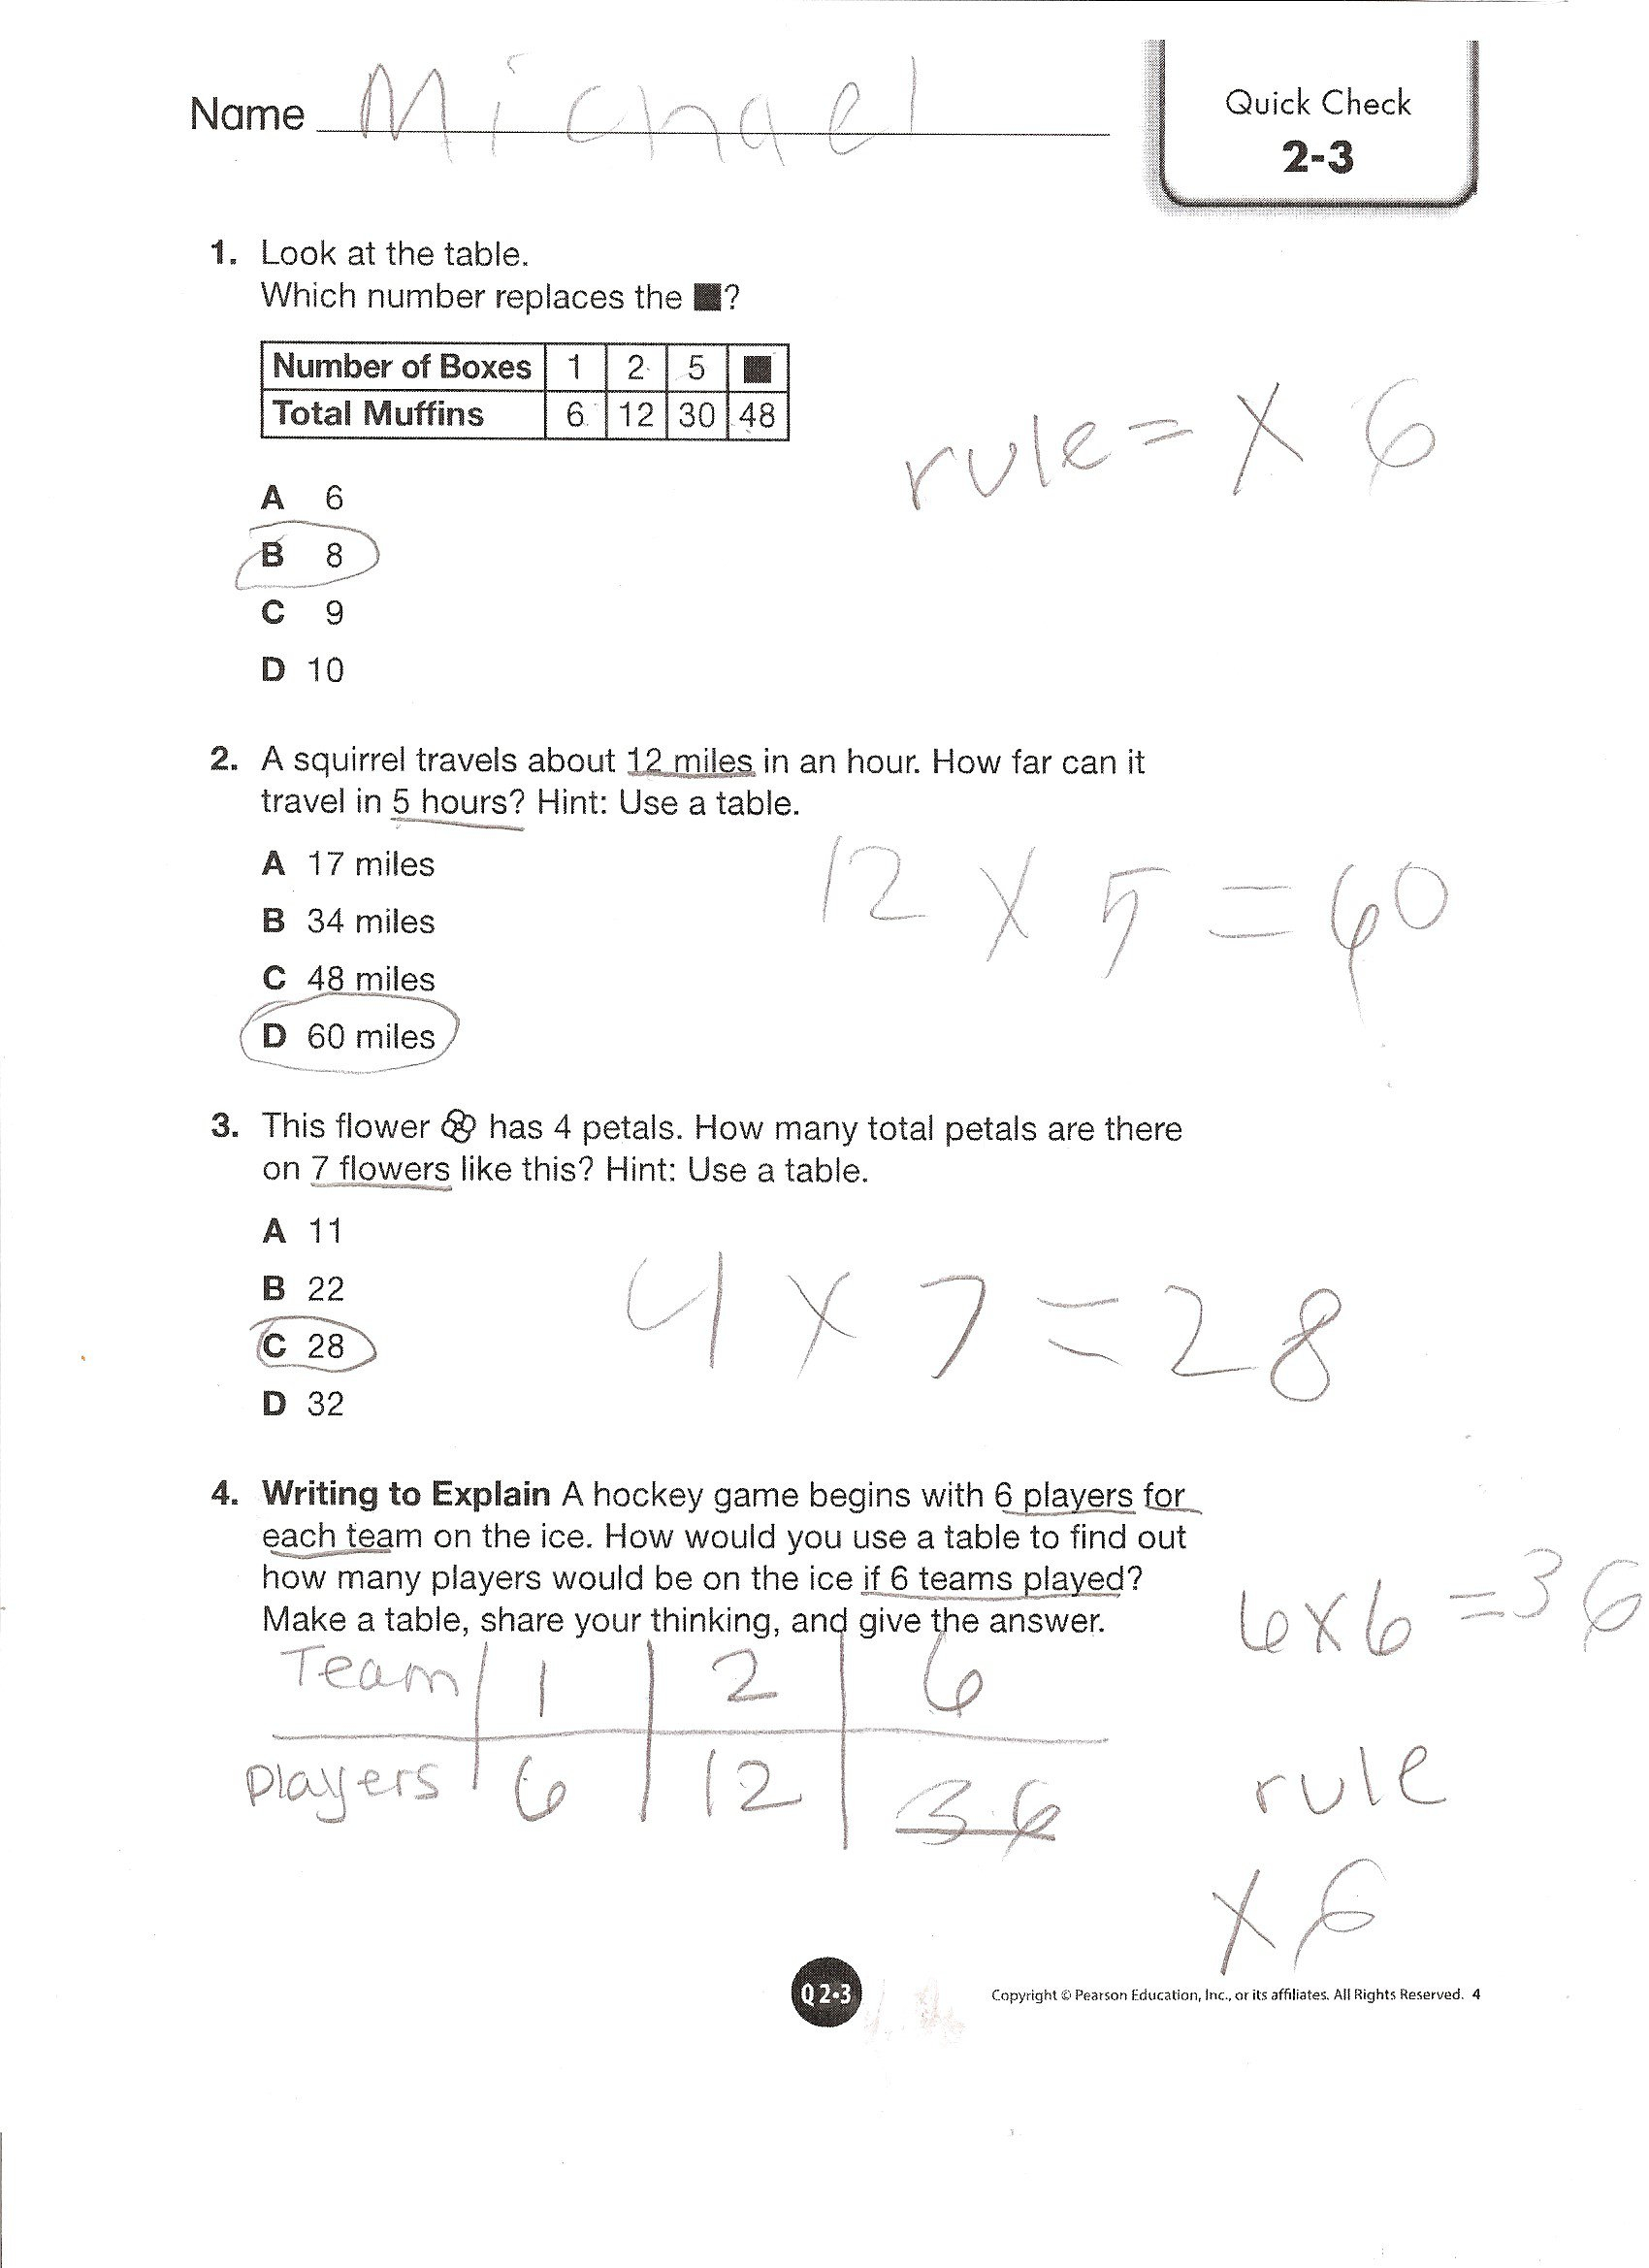 envision-math-worksheets-p1-1-3rd-grade-3rd-grade-math-worksheets